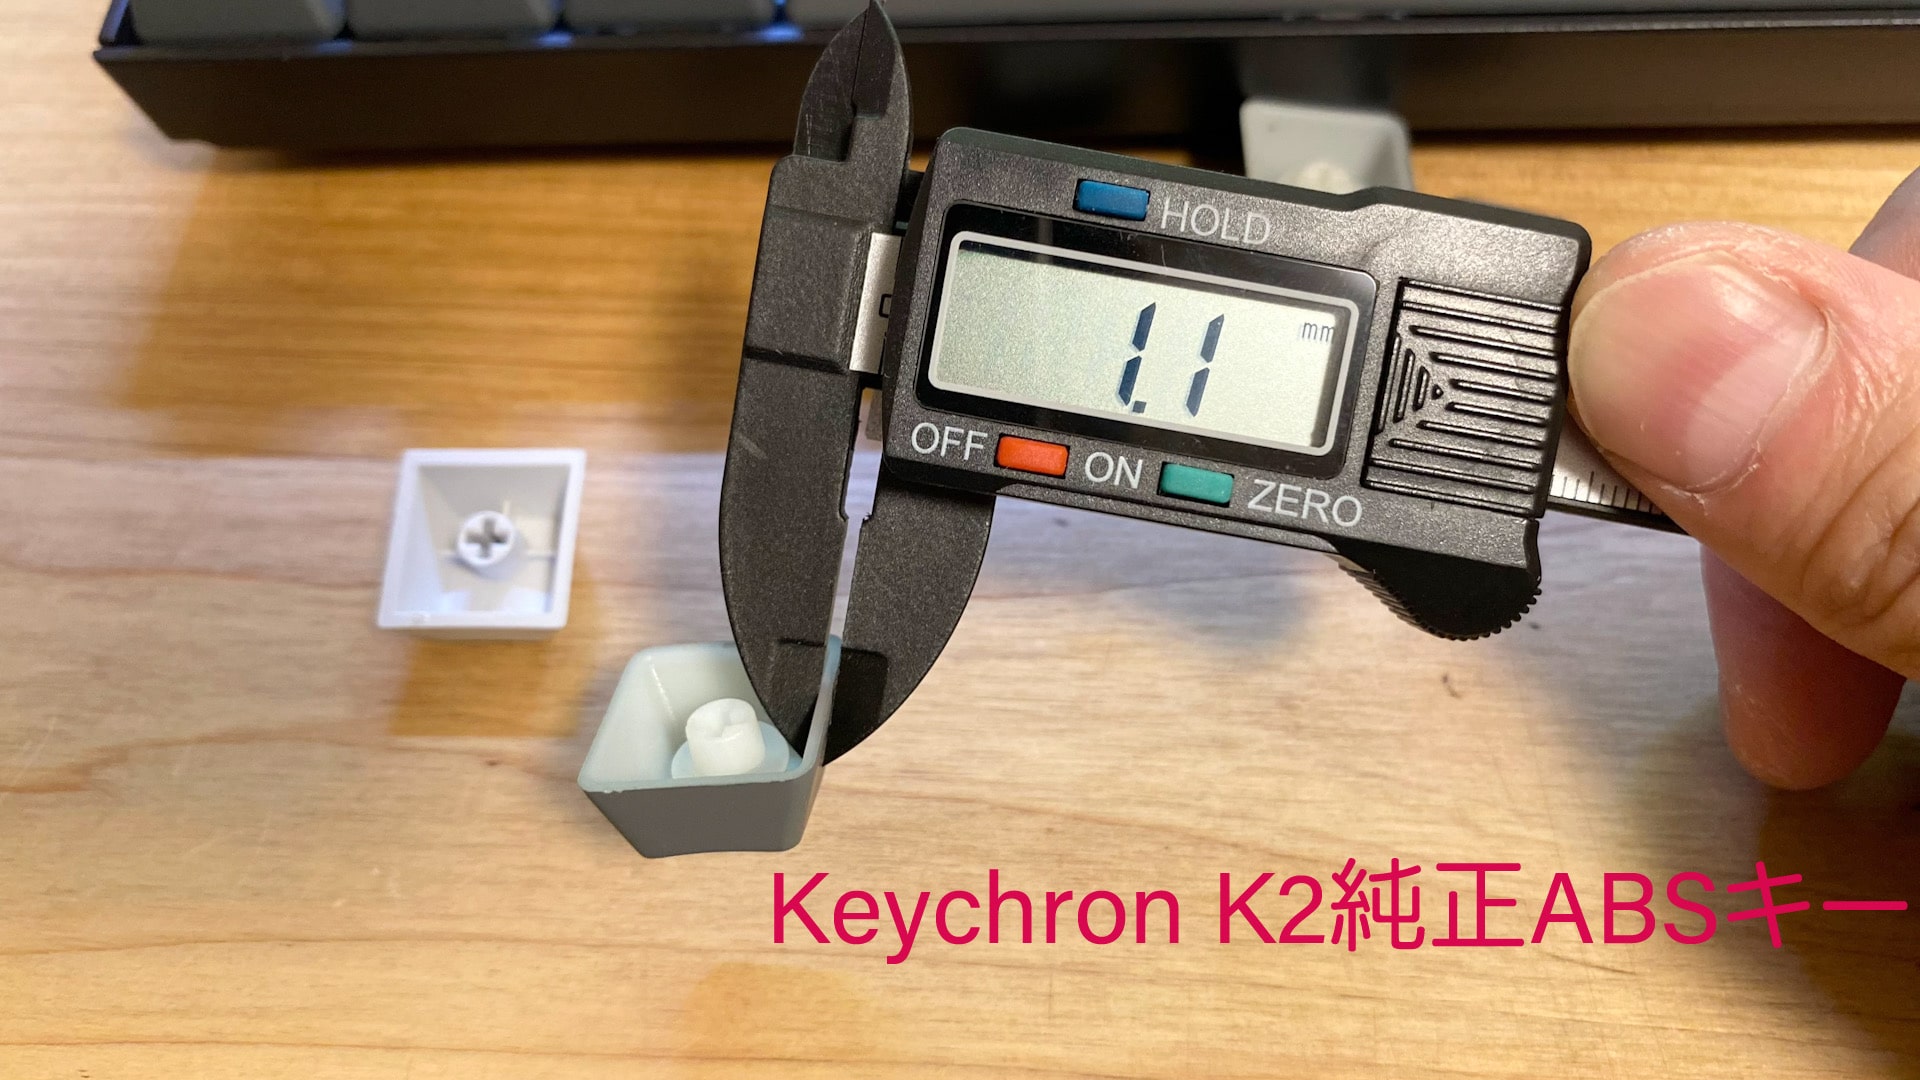 Keychron K2のキーキャップ厚み